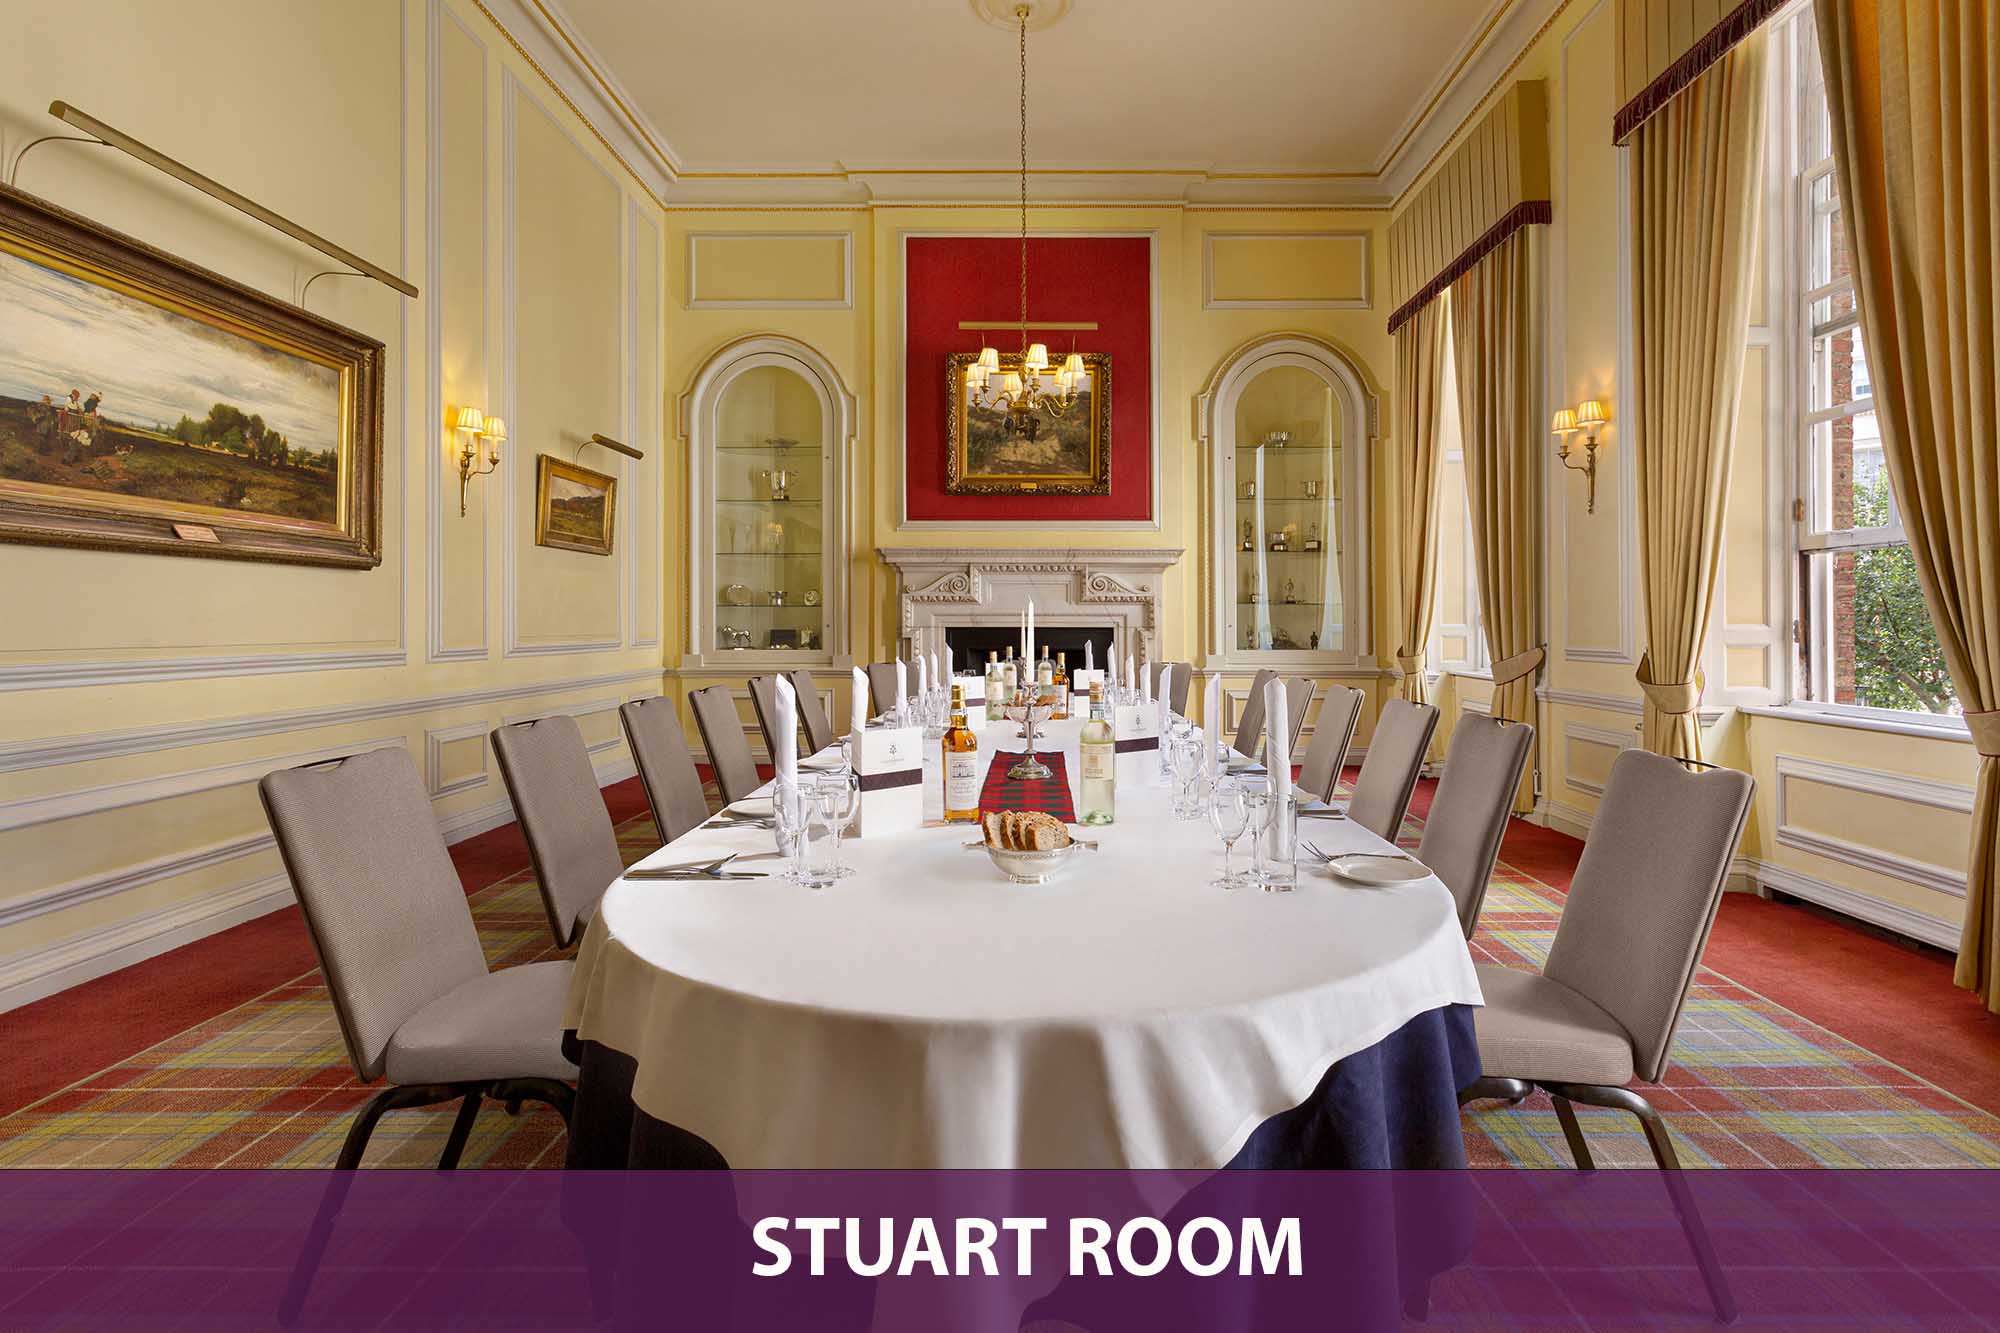 Stuart Room_Oval Table Dining